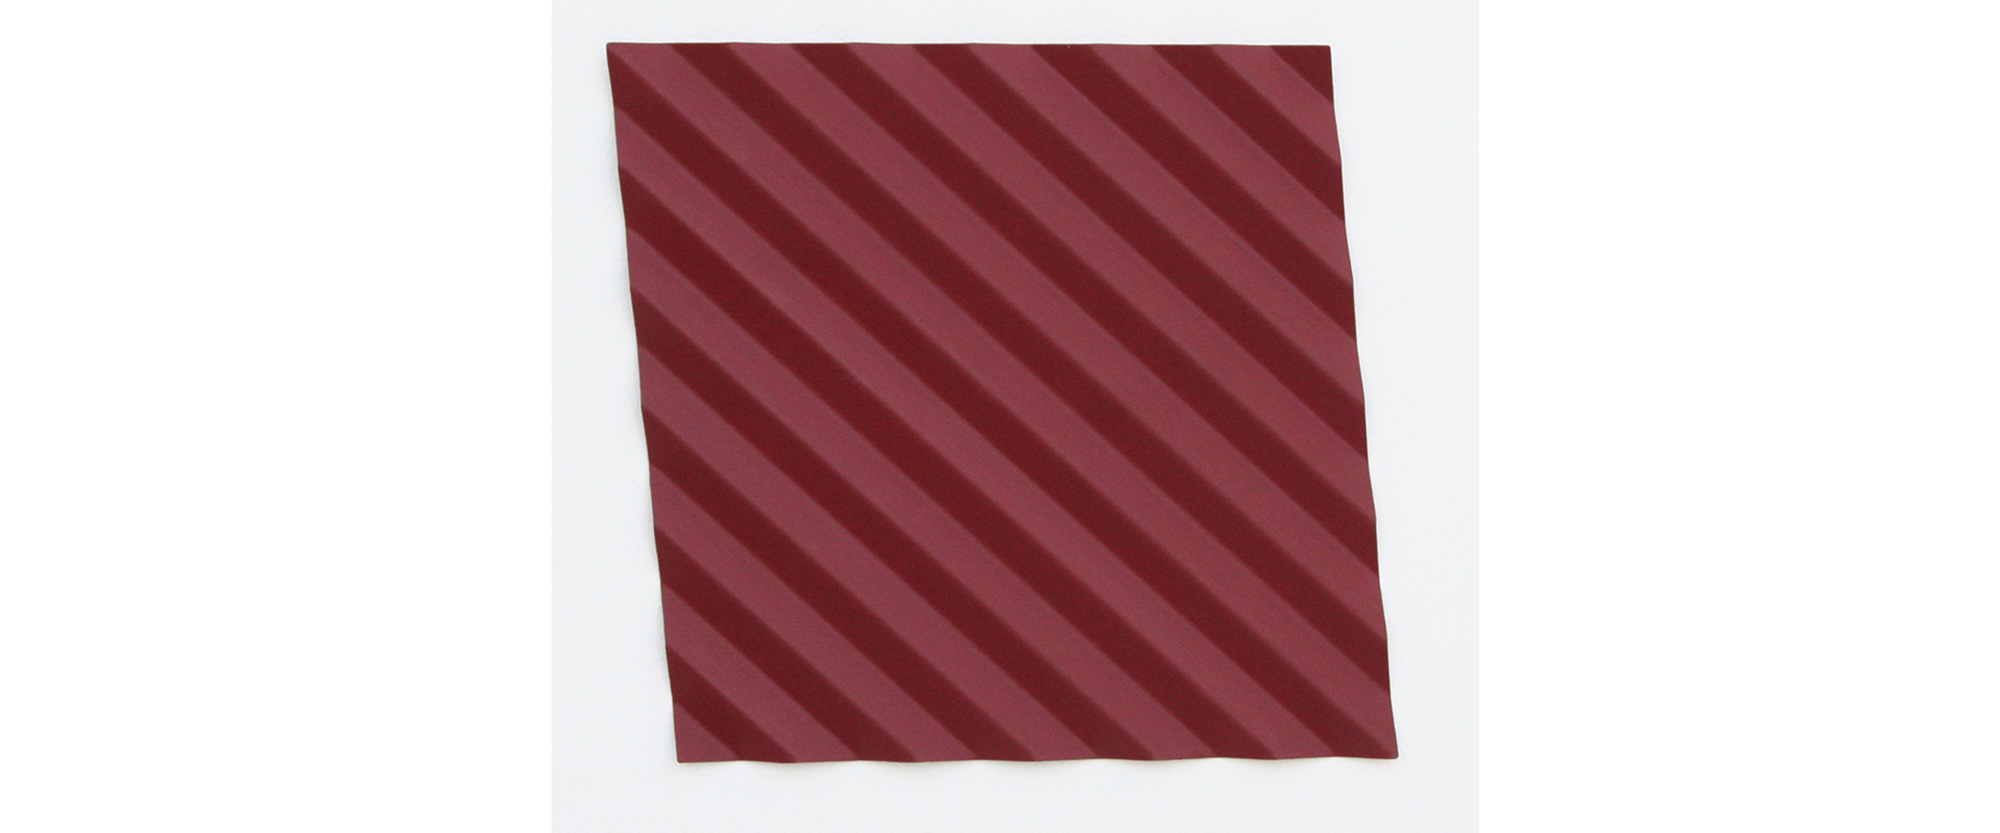 rhombus (bordeaux) - Unikat - 2007 Stahl, Lack, gefaltet, 25 x 25 cm